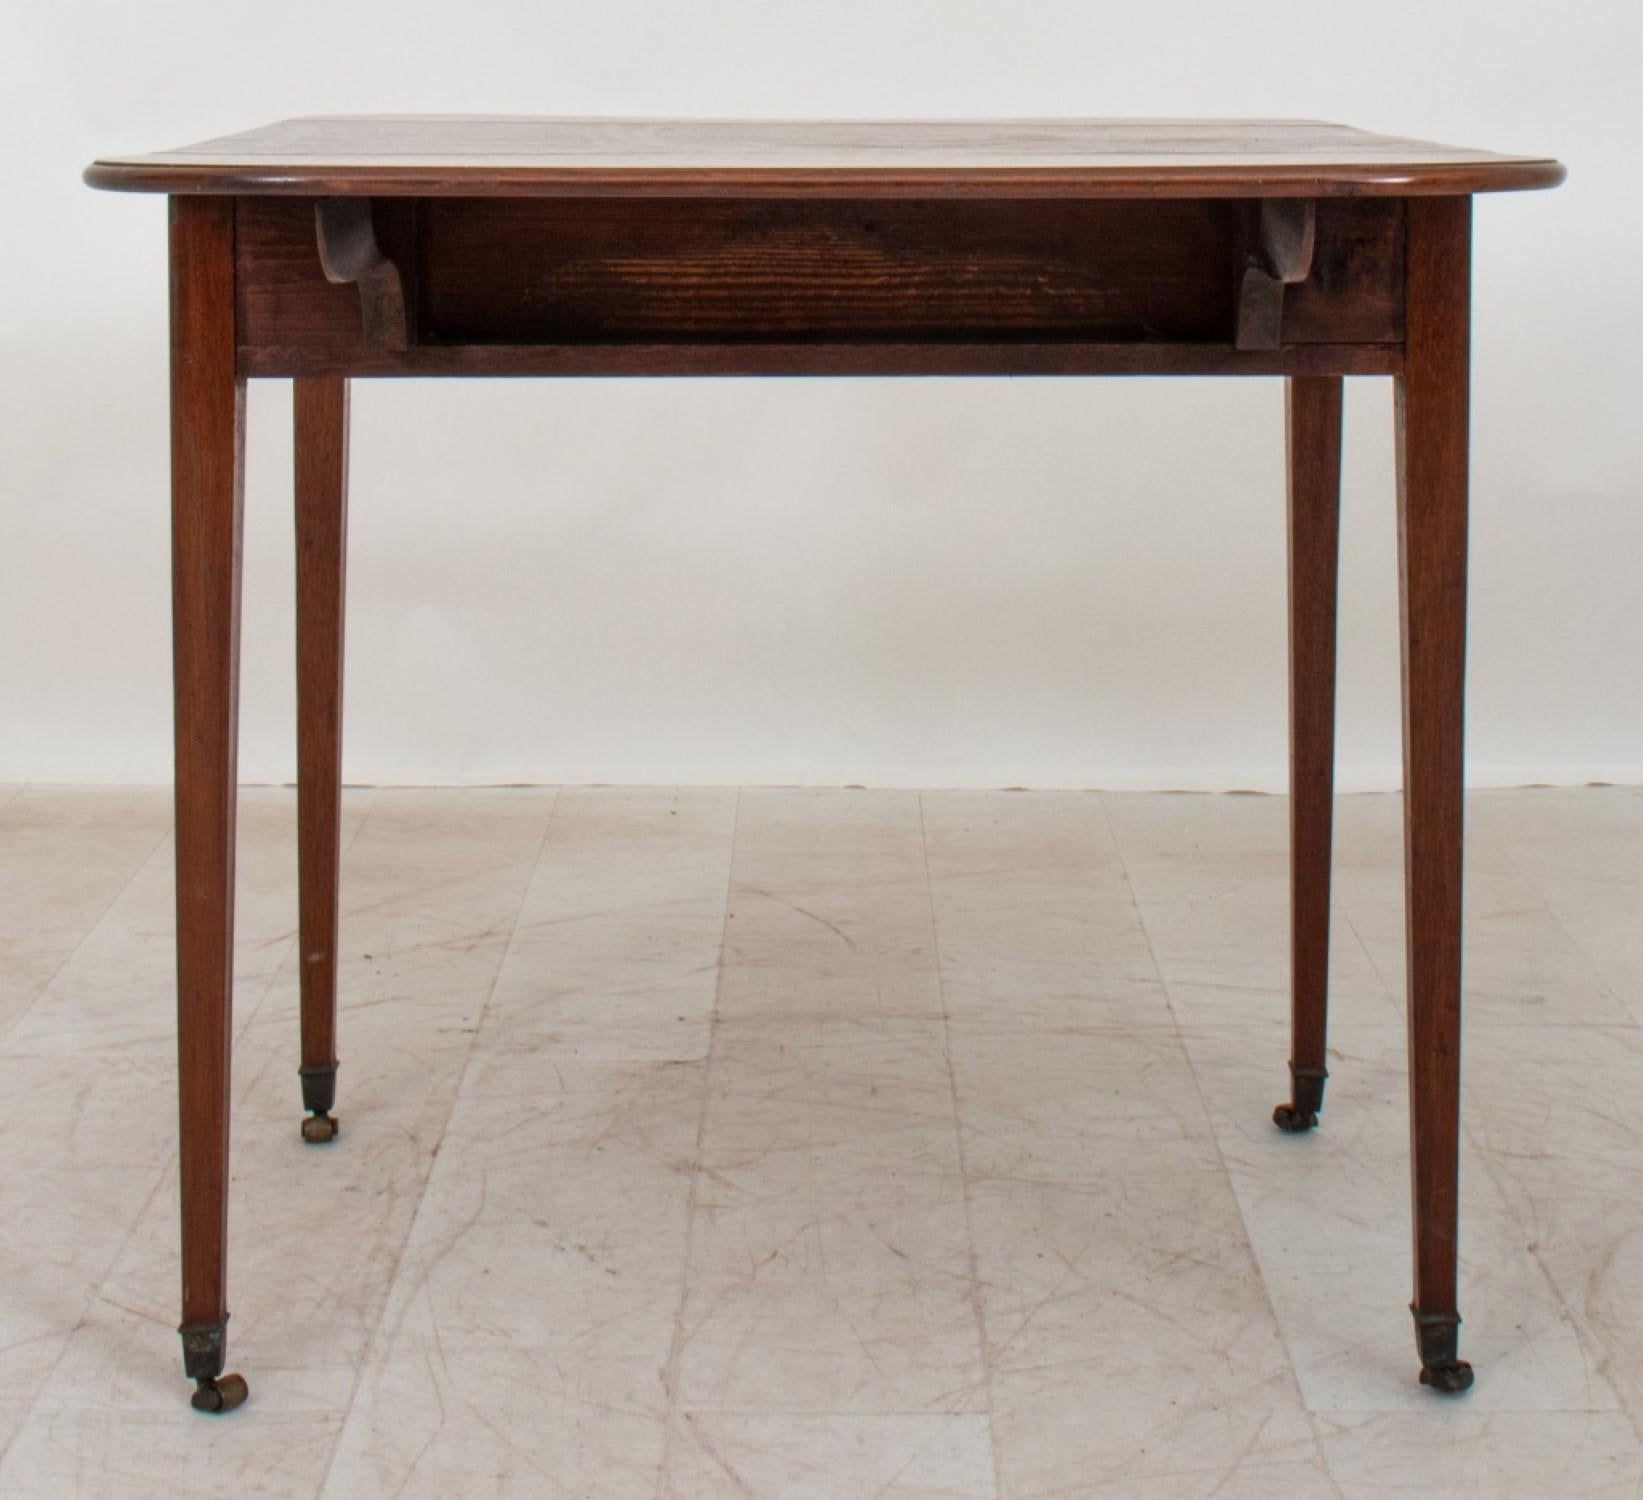 La table Pembroke en acajou de style George III a un plateau rectangulaire et des feuilles tombantes en forme. Le côté comporte un tiroir au-dessus de pieds carrés effilés. 

Concessionnaire : S138XX



